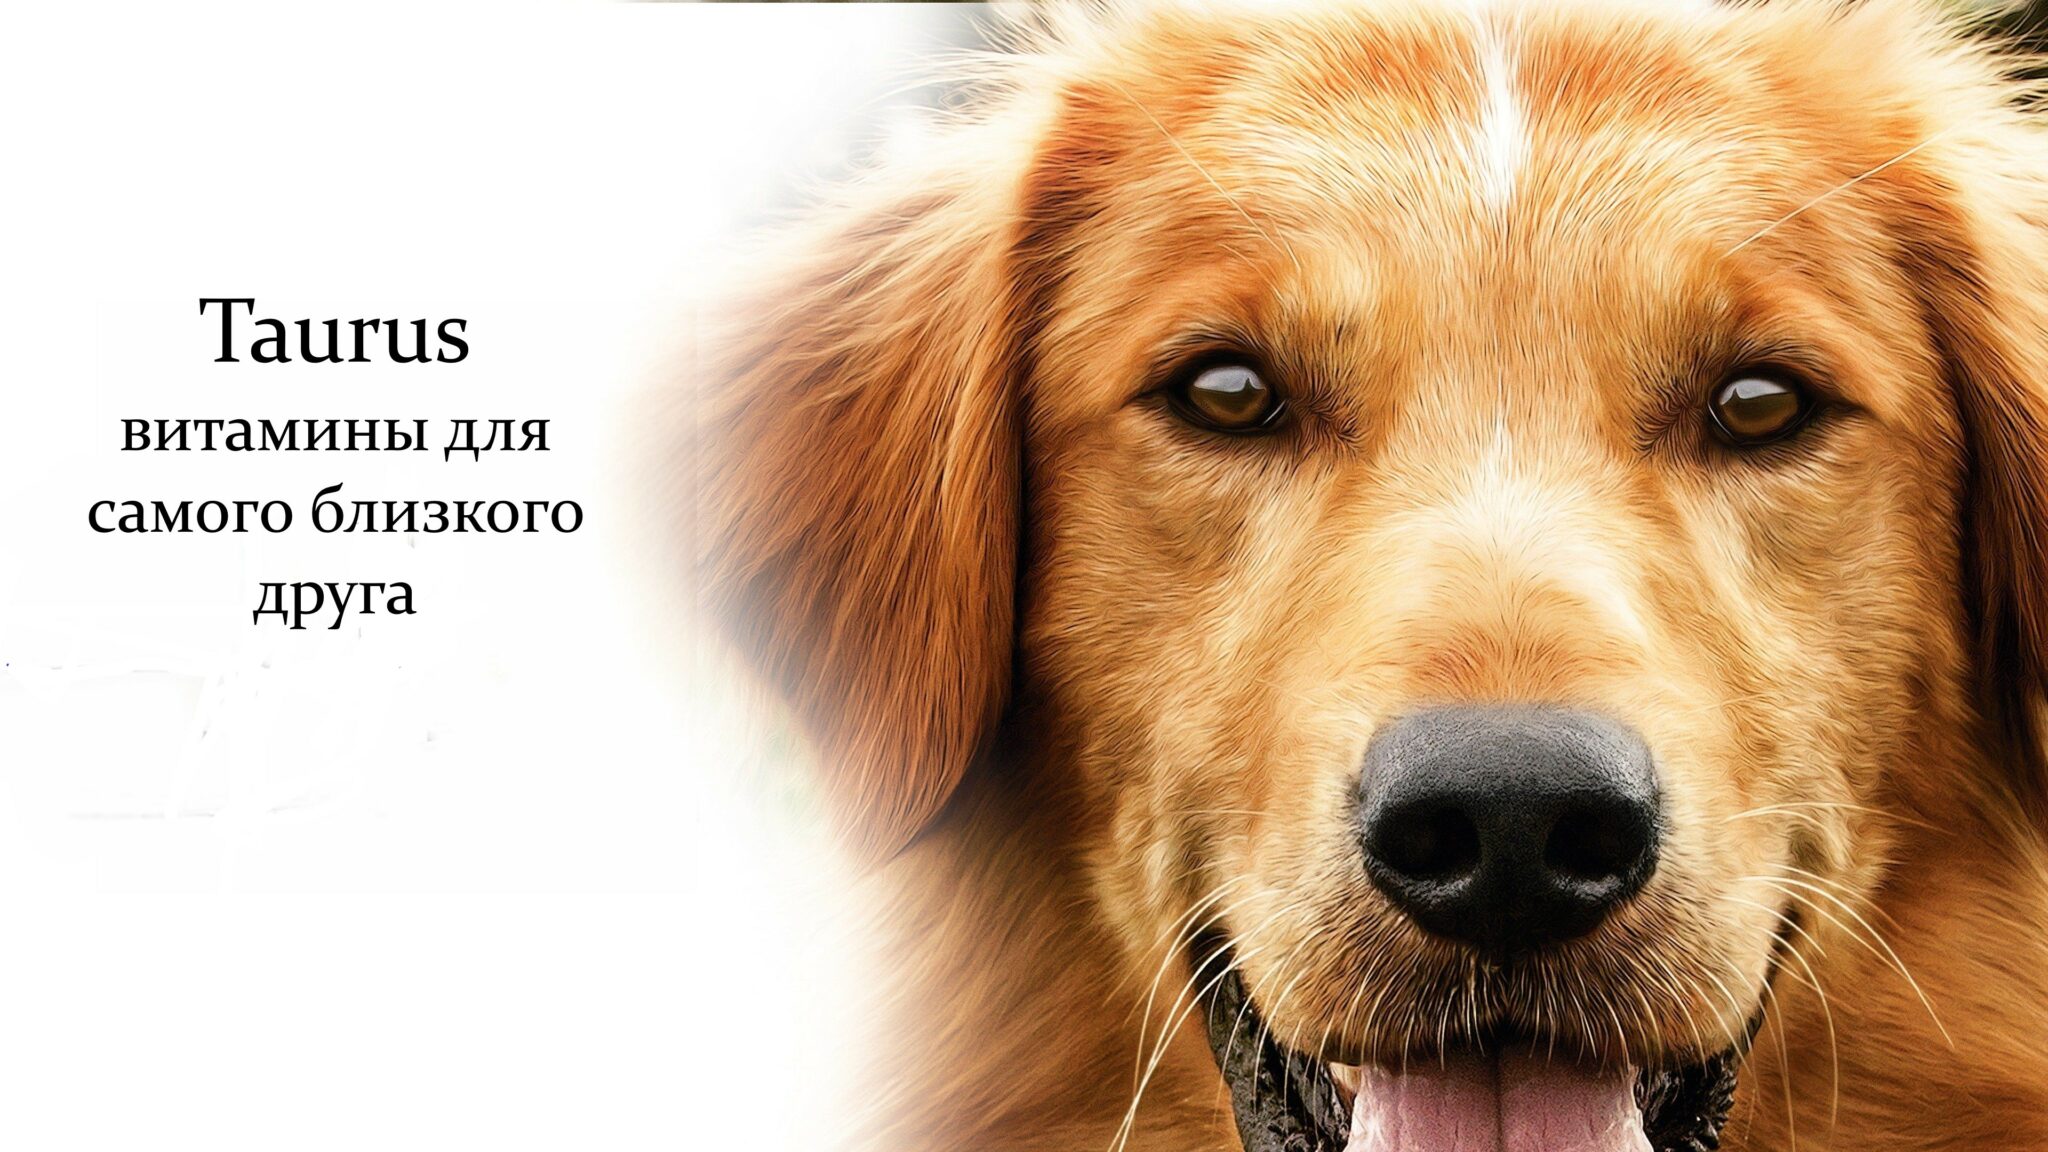 Постер собаки. Постеры с собаками. Жизнь собак. Собачья жизнь 2017.